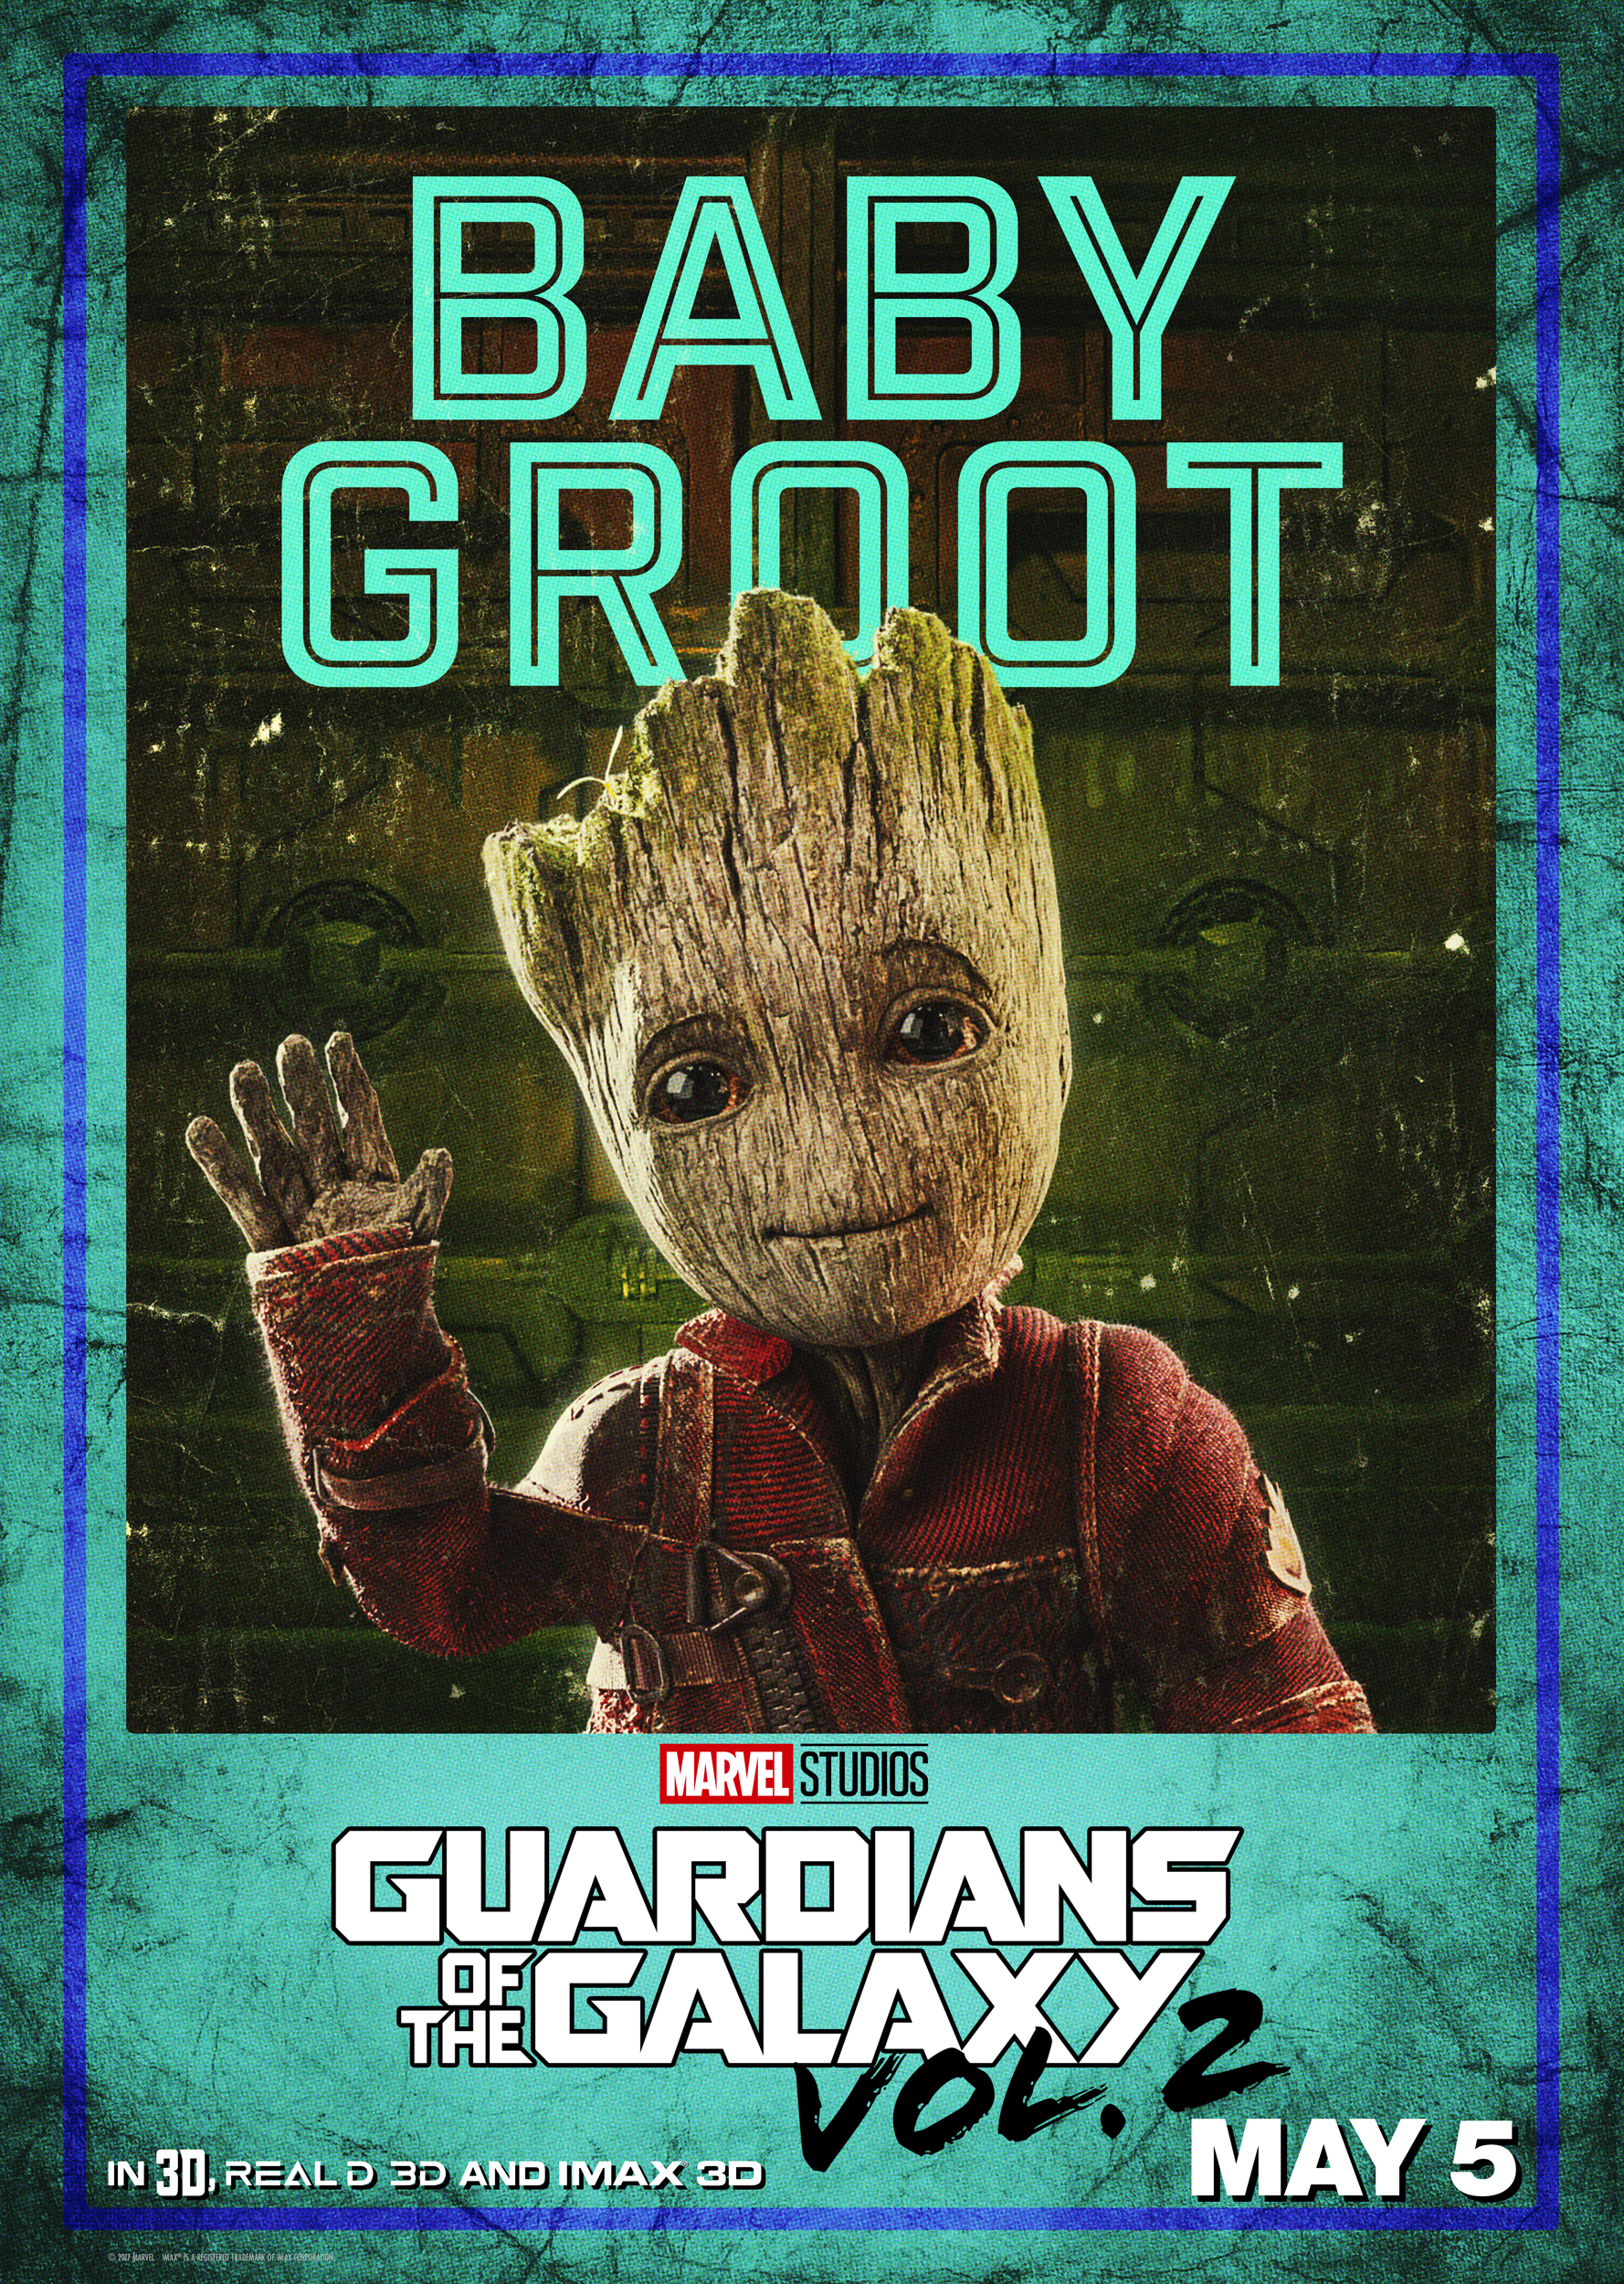 Vin Diesel as Baby Groot